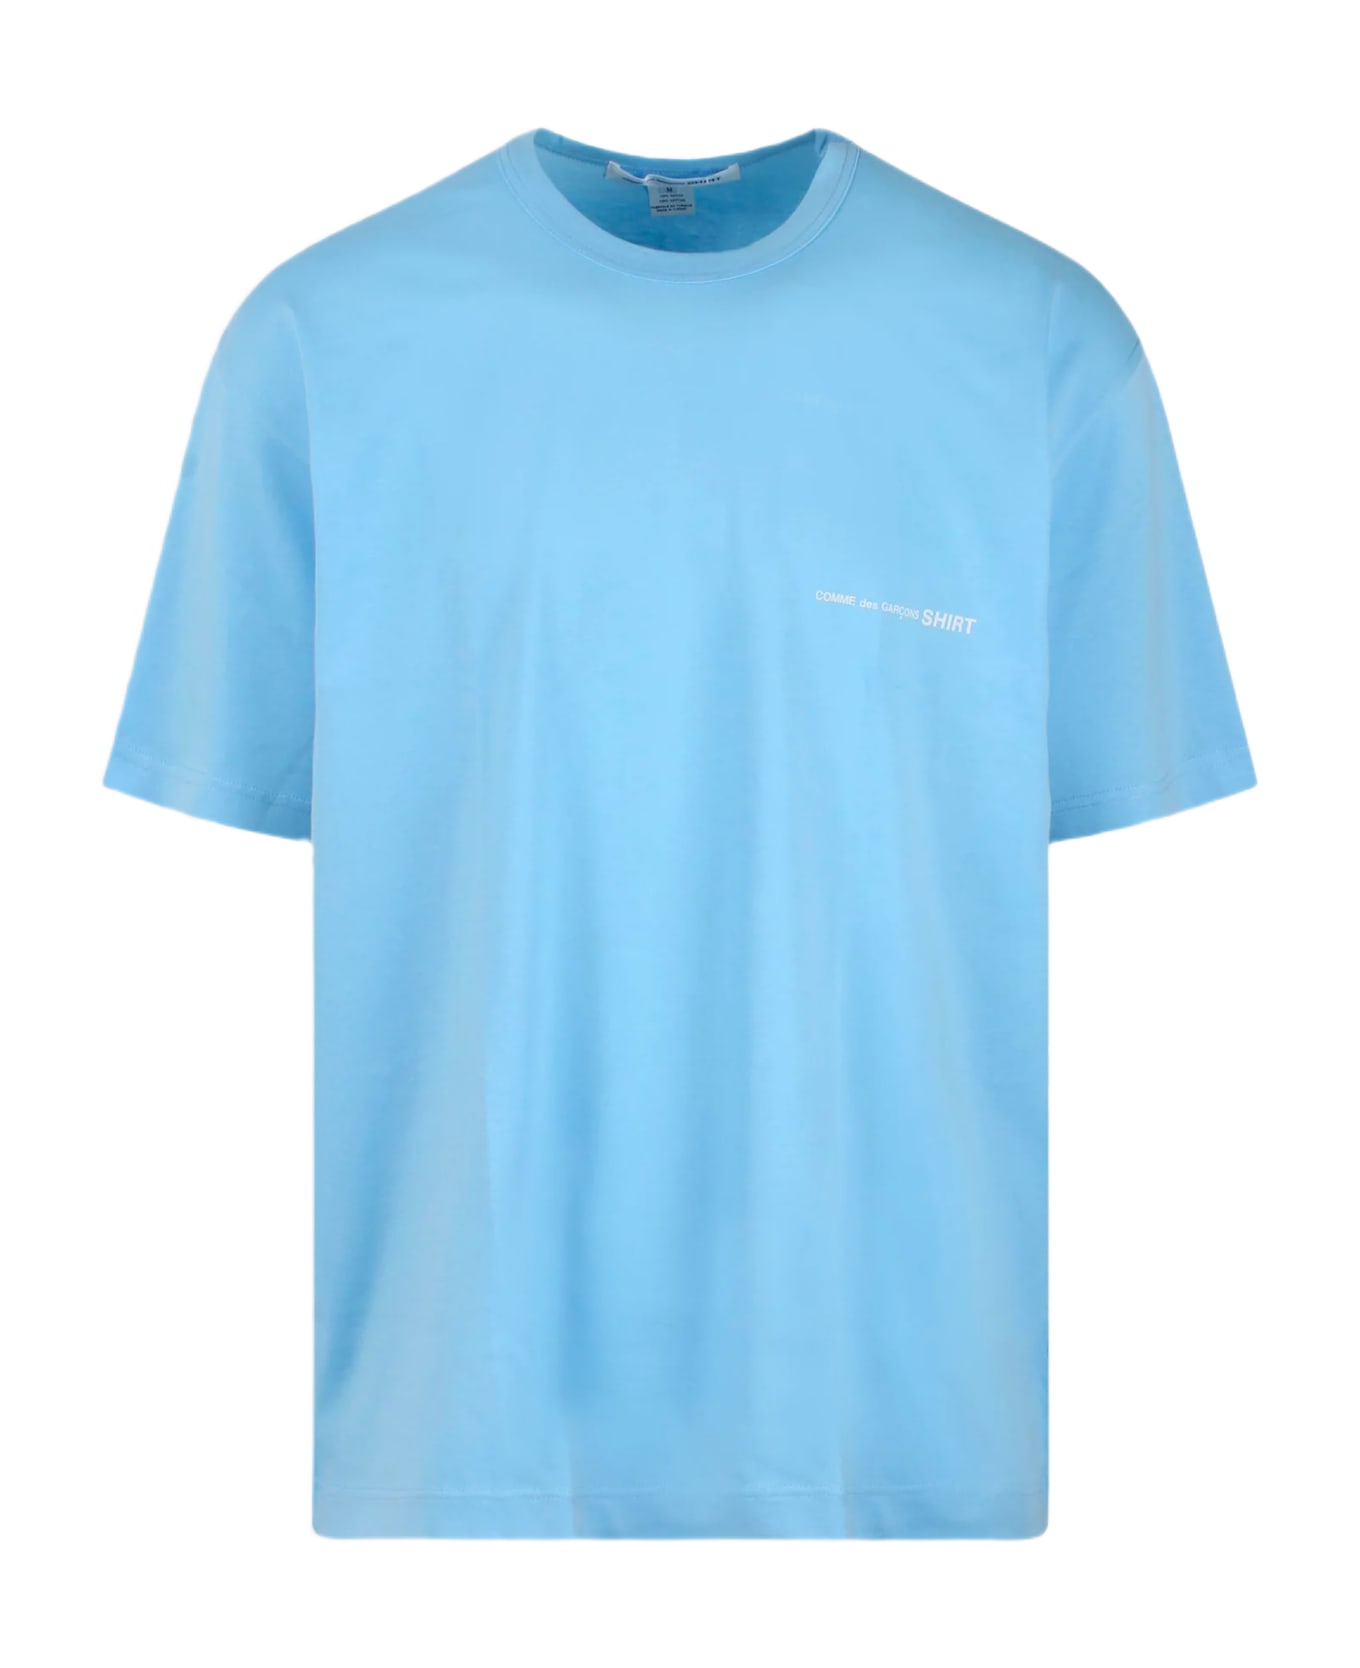 Comme des Garçons Shirt Mens T-shirt Knit Sky blue cotton oversize t-shirt with chest logo - Celeste シャツ